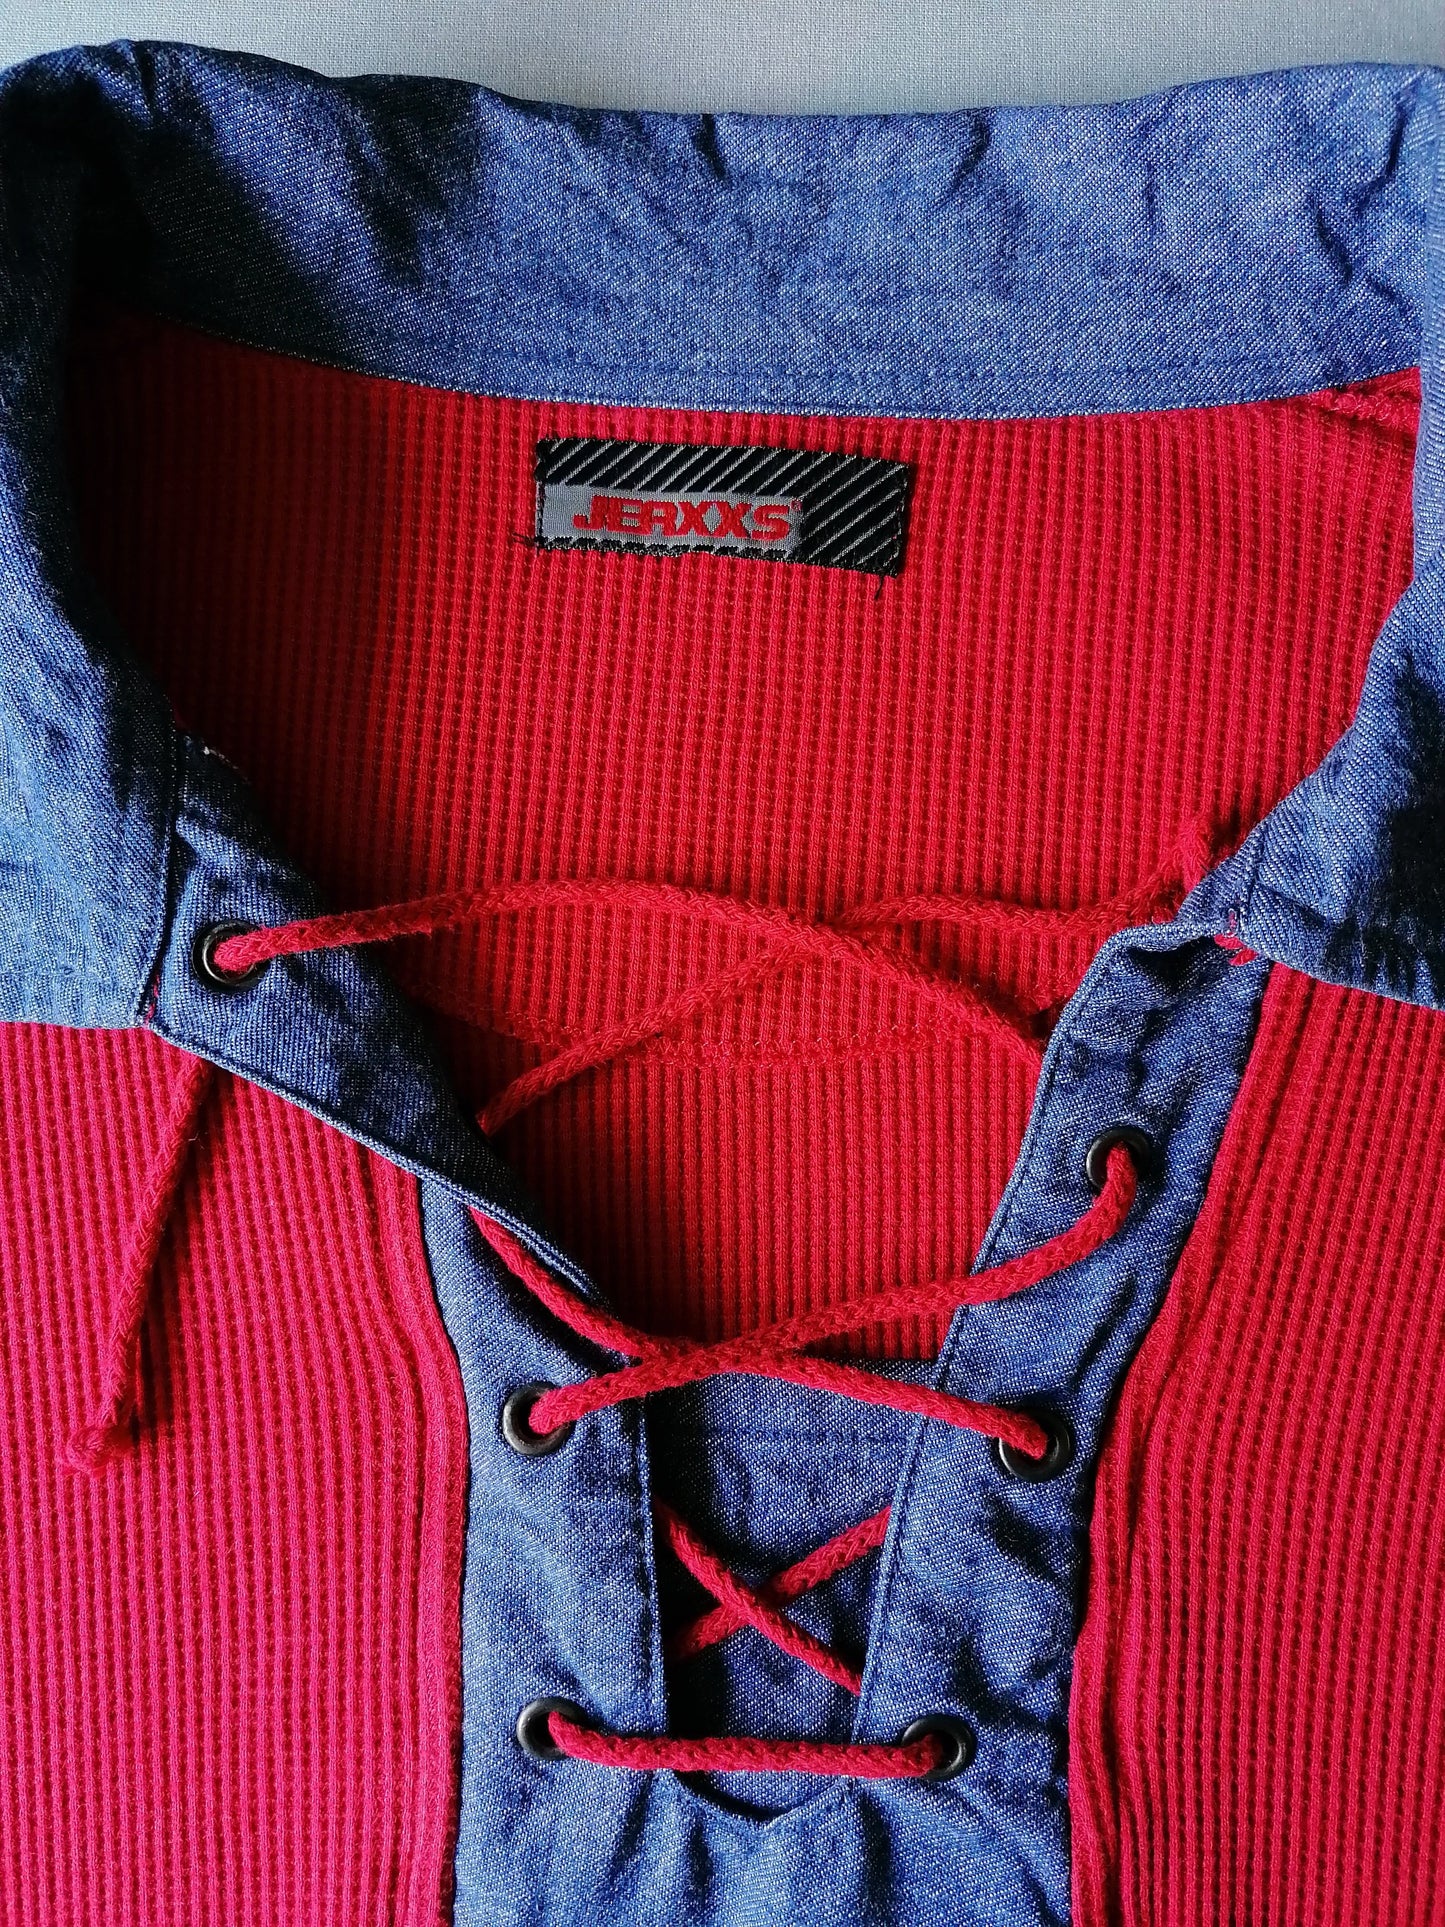 Jerxxs polo trui met touwtjes. Rood gekleurd. Maat 6XL